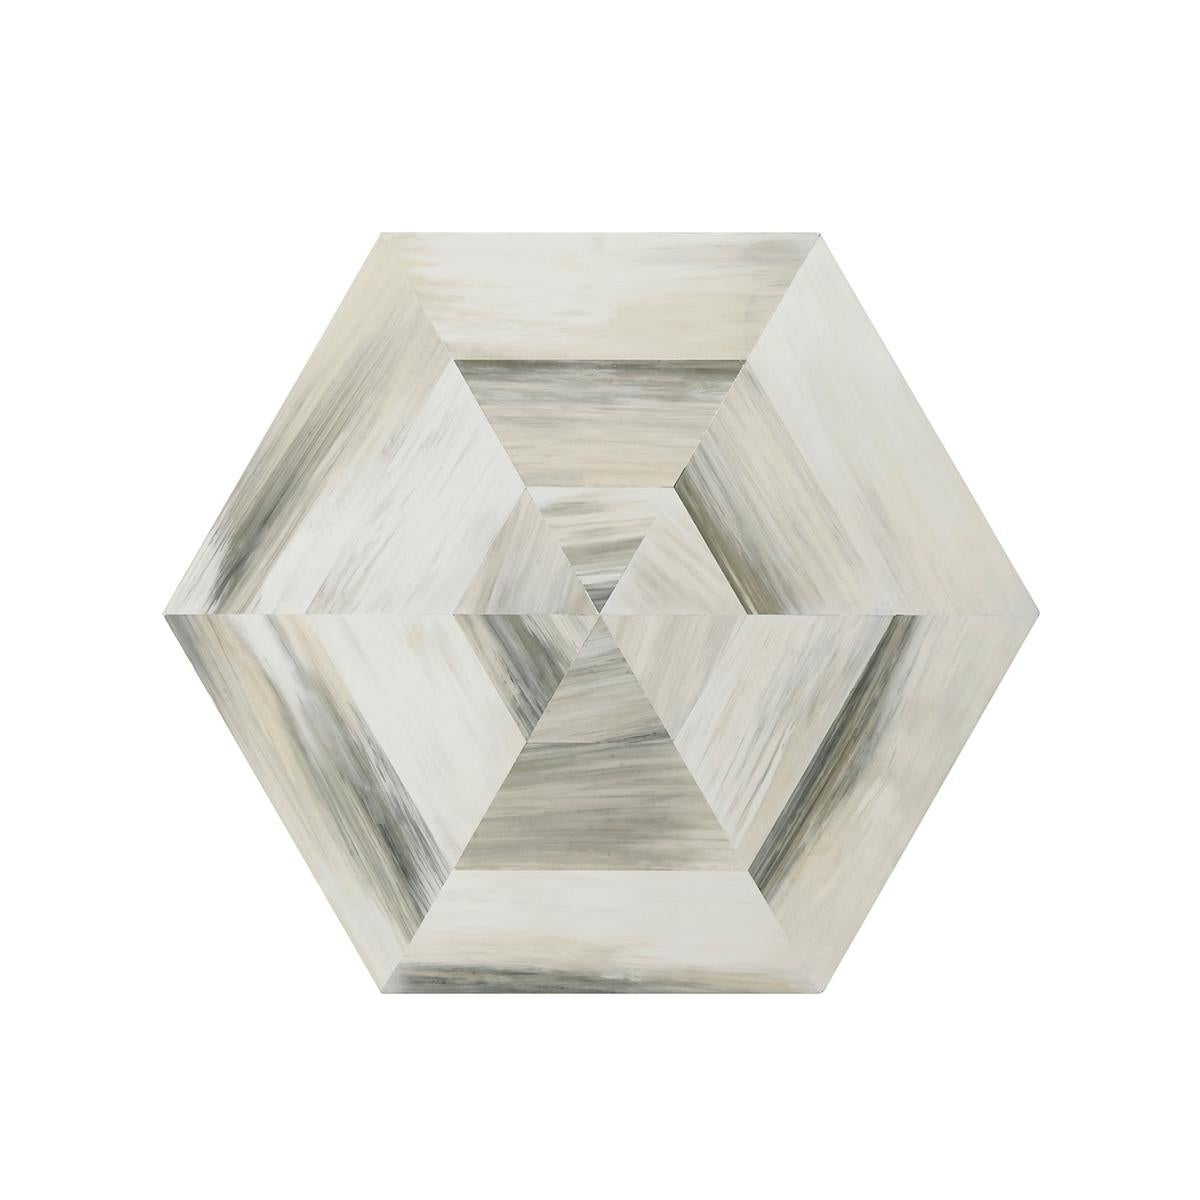 Table hexagonale inhabituelle à trois niveaux. Chaque étage a une surface carrelée en fausse corne peinte à la main et les étages sont maintenus par des supports en acrylique avec des raccords en acier inoxydable poli.

Dimensions : 22